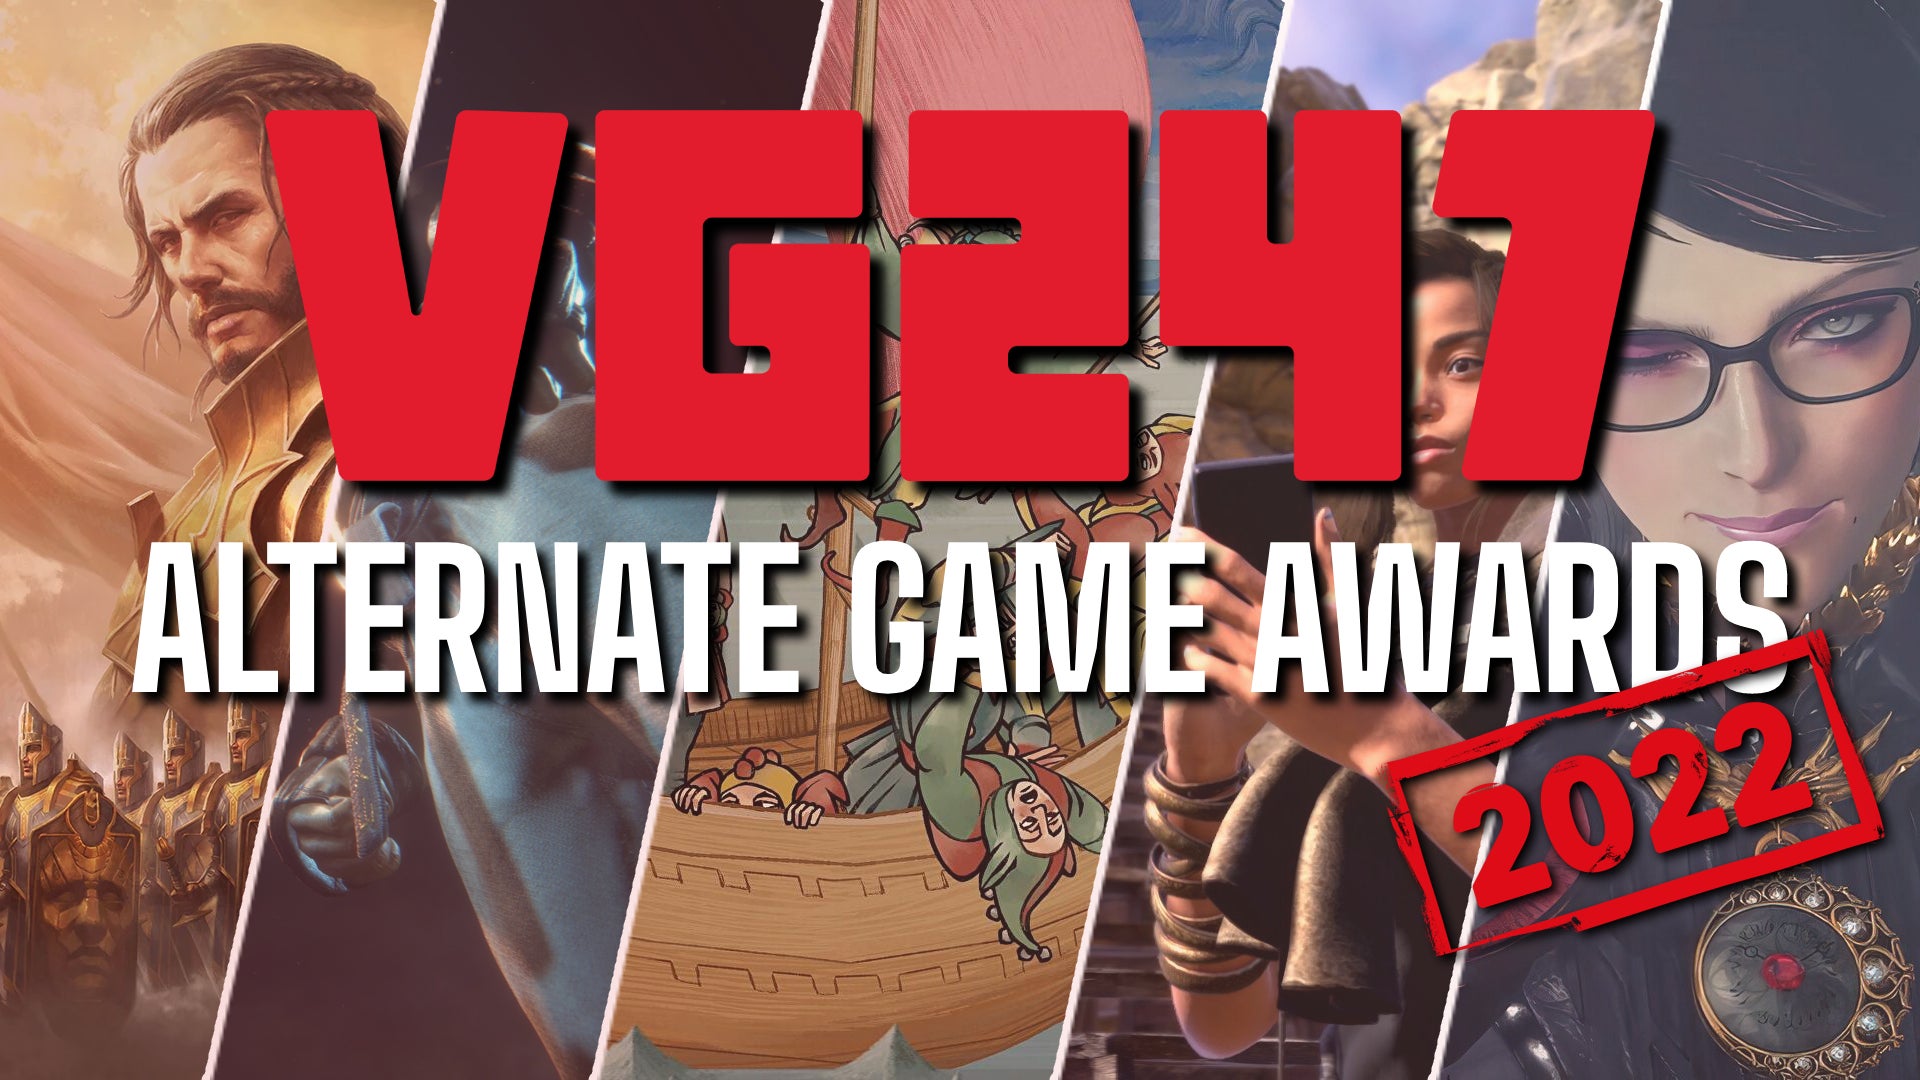 Image for VG247's Alternate Game Awards 2022